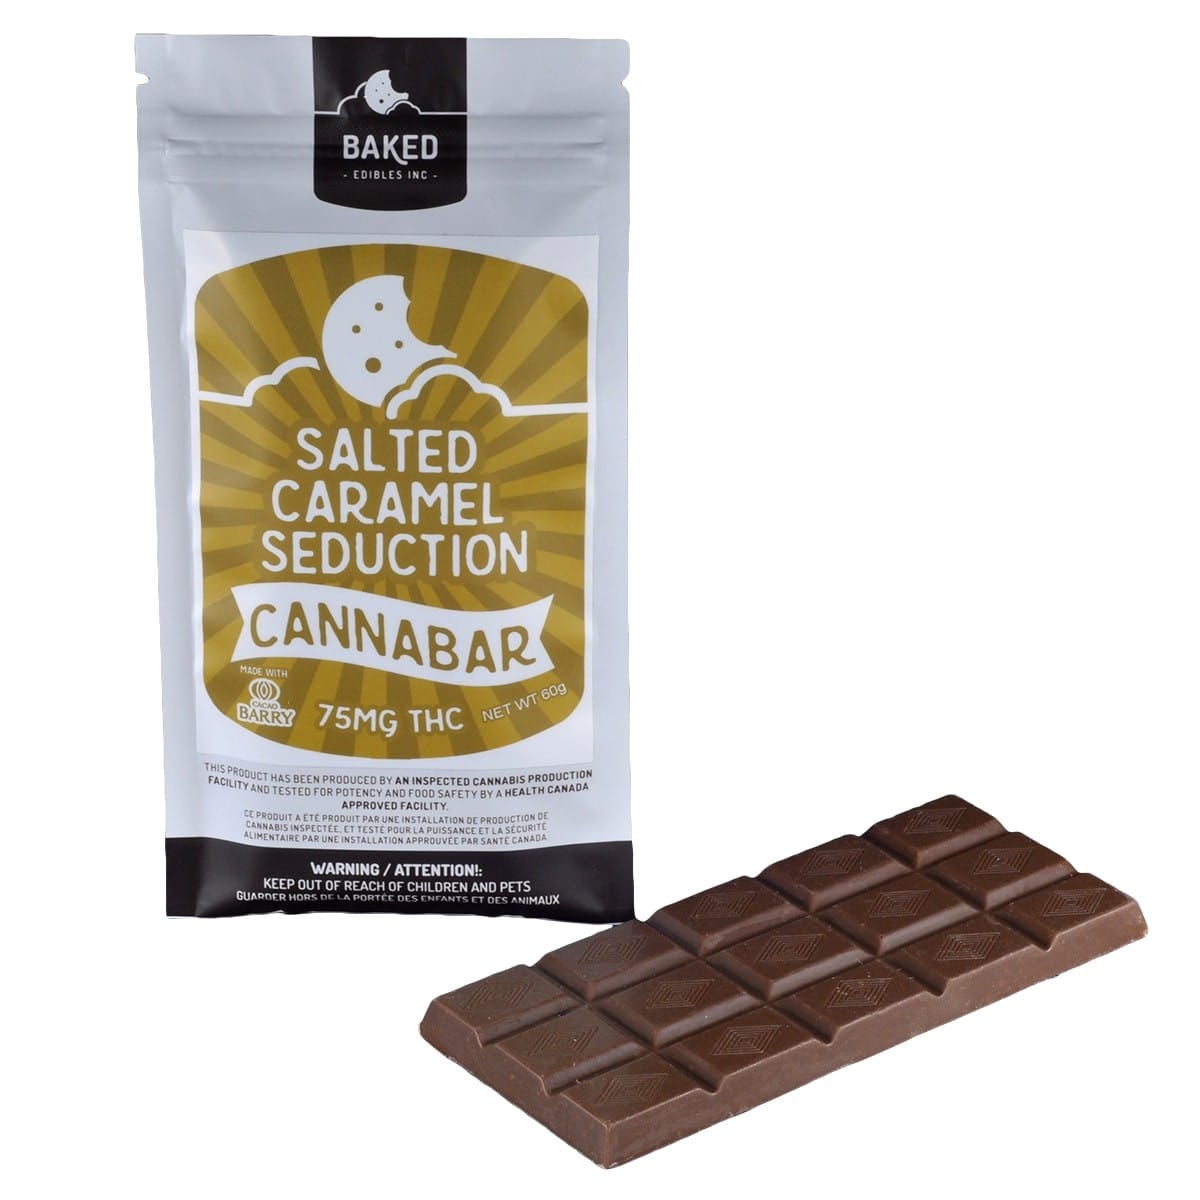 Baked Edibles Inc. - Salted Caramel Seductiom - Cannabar